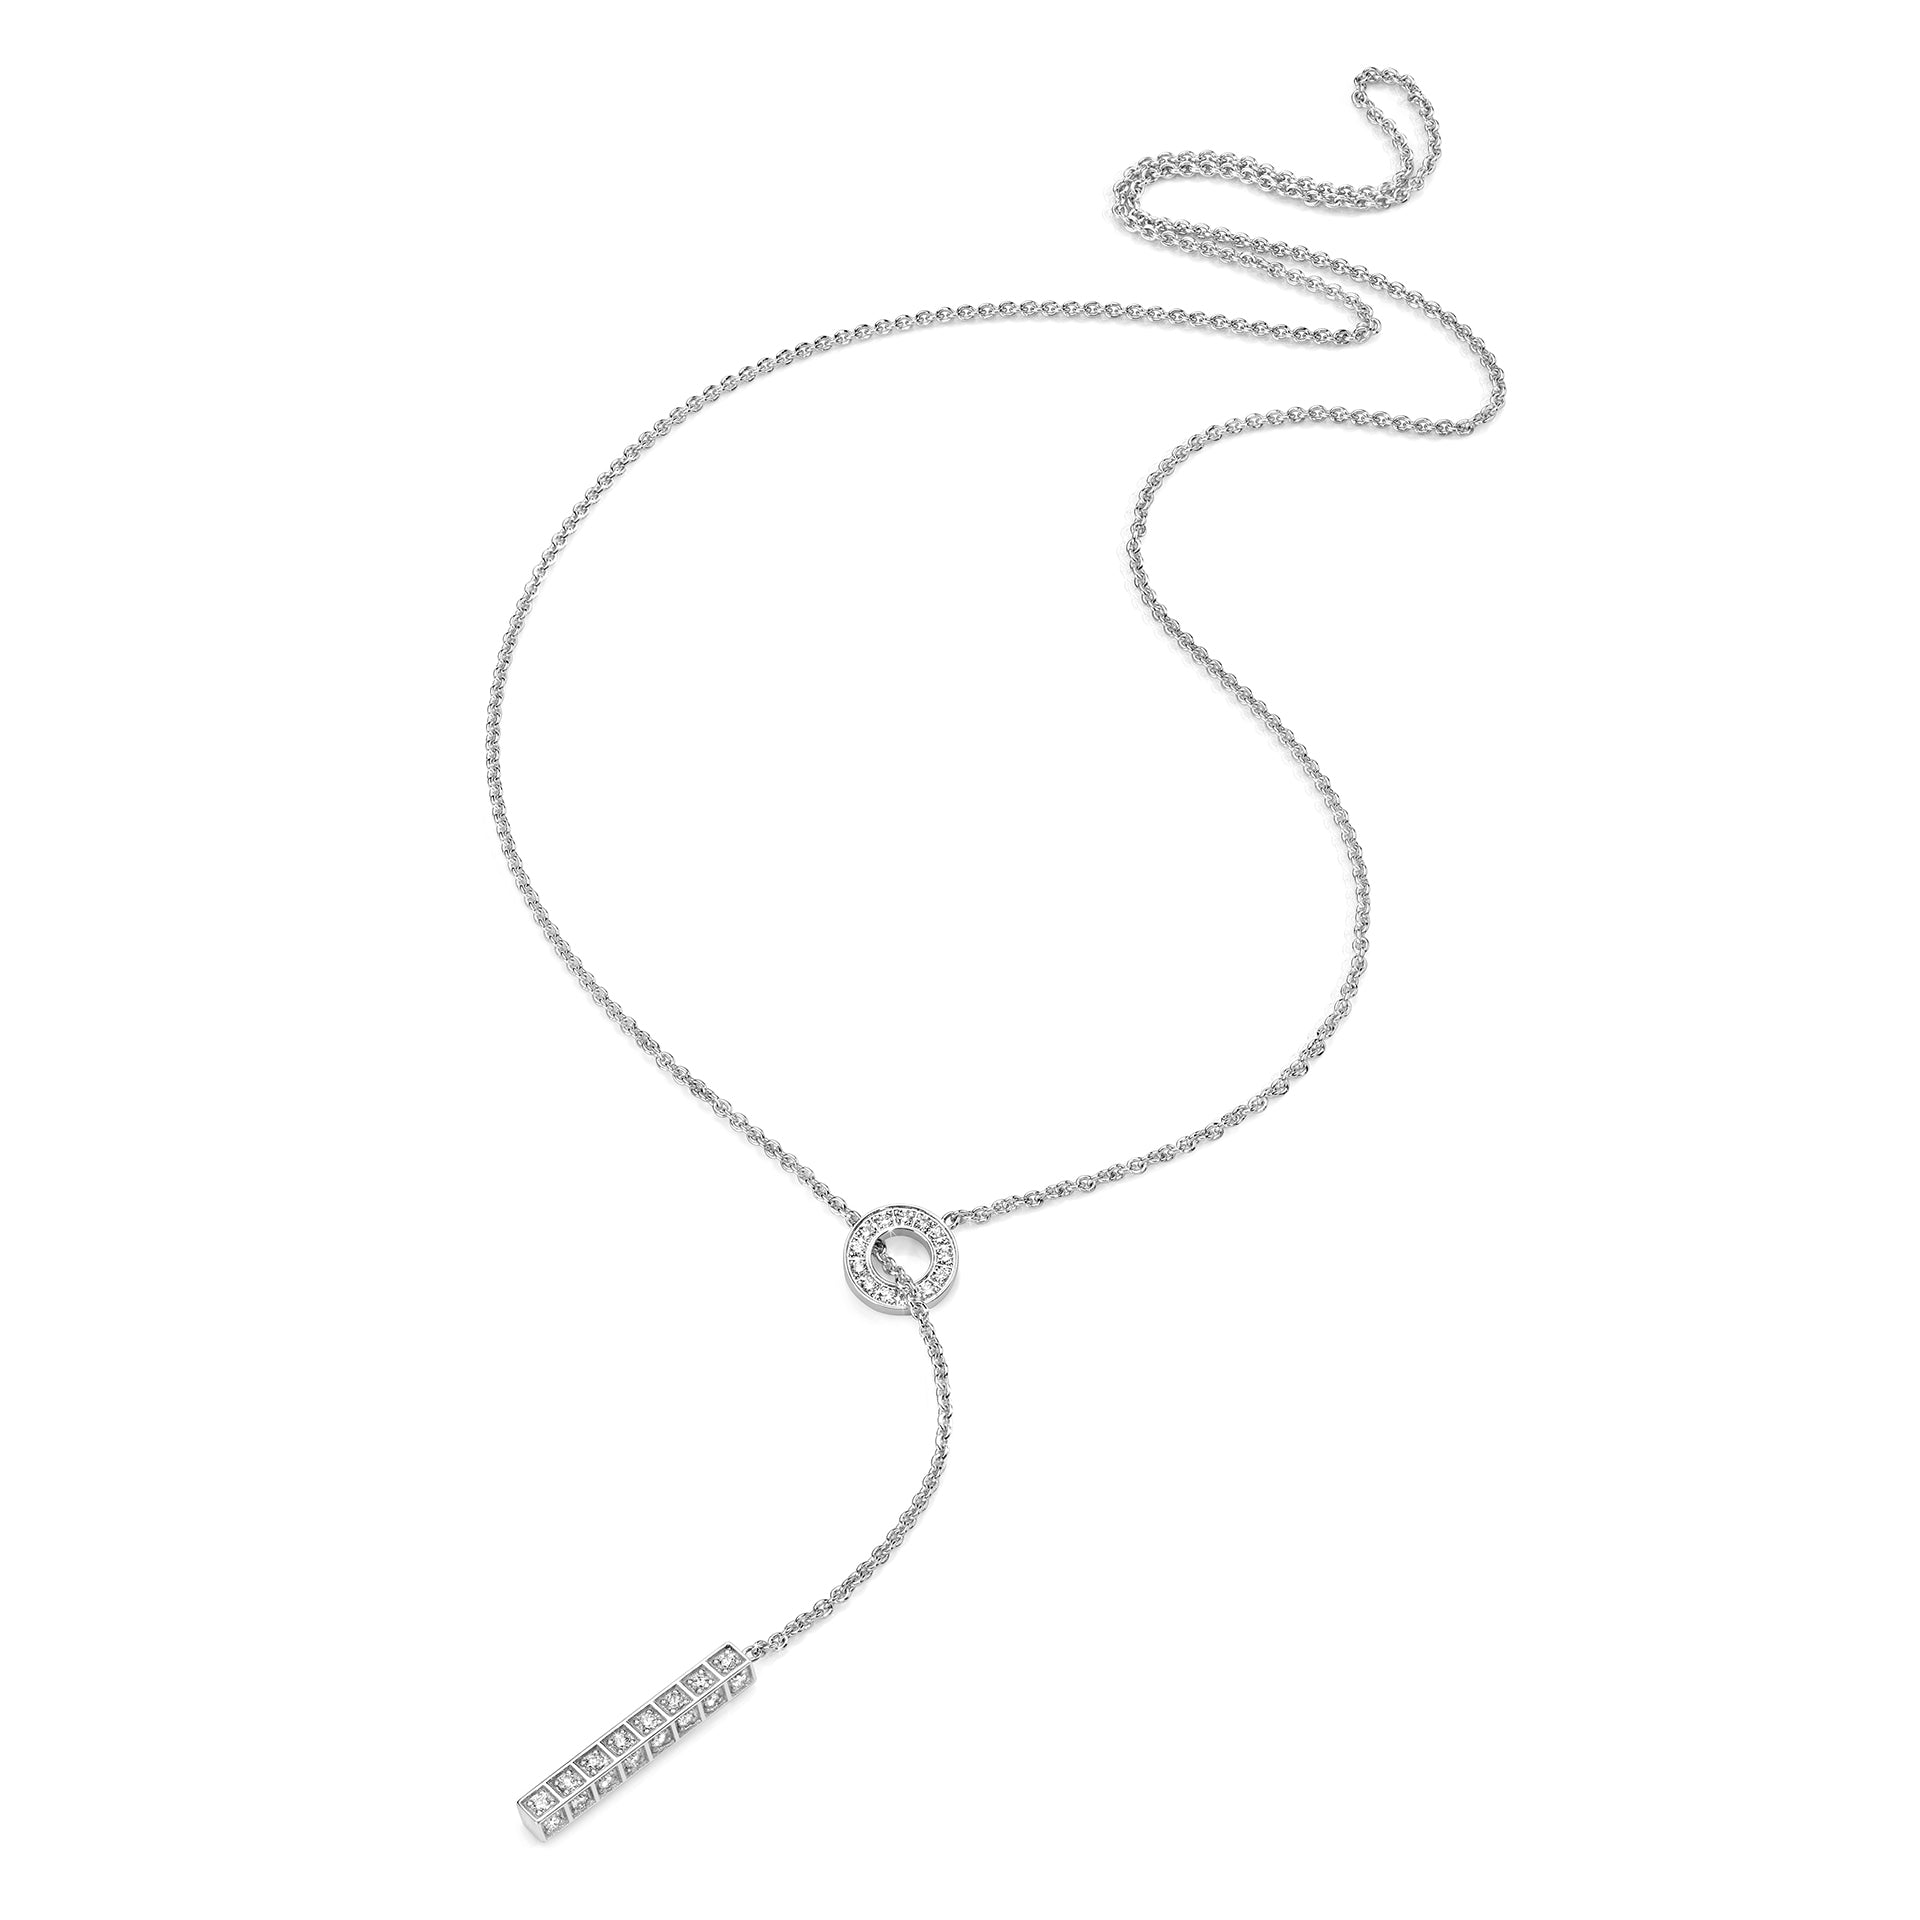 Adornia Love Lariat Necklace silver gold – ADORNIA